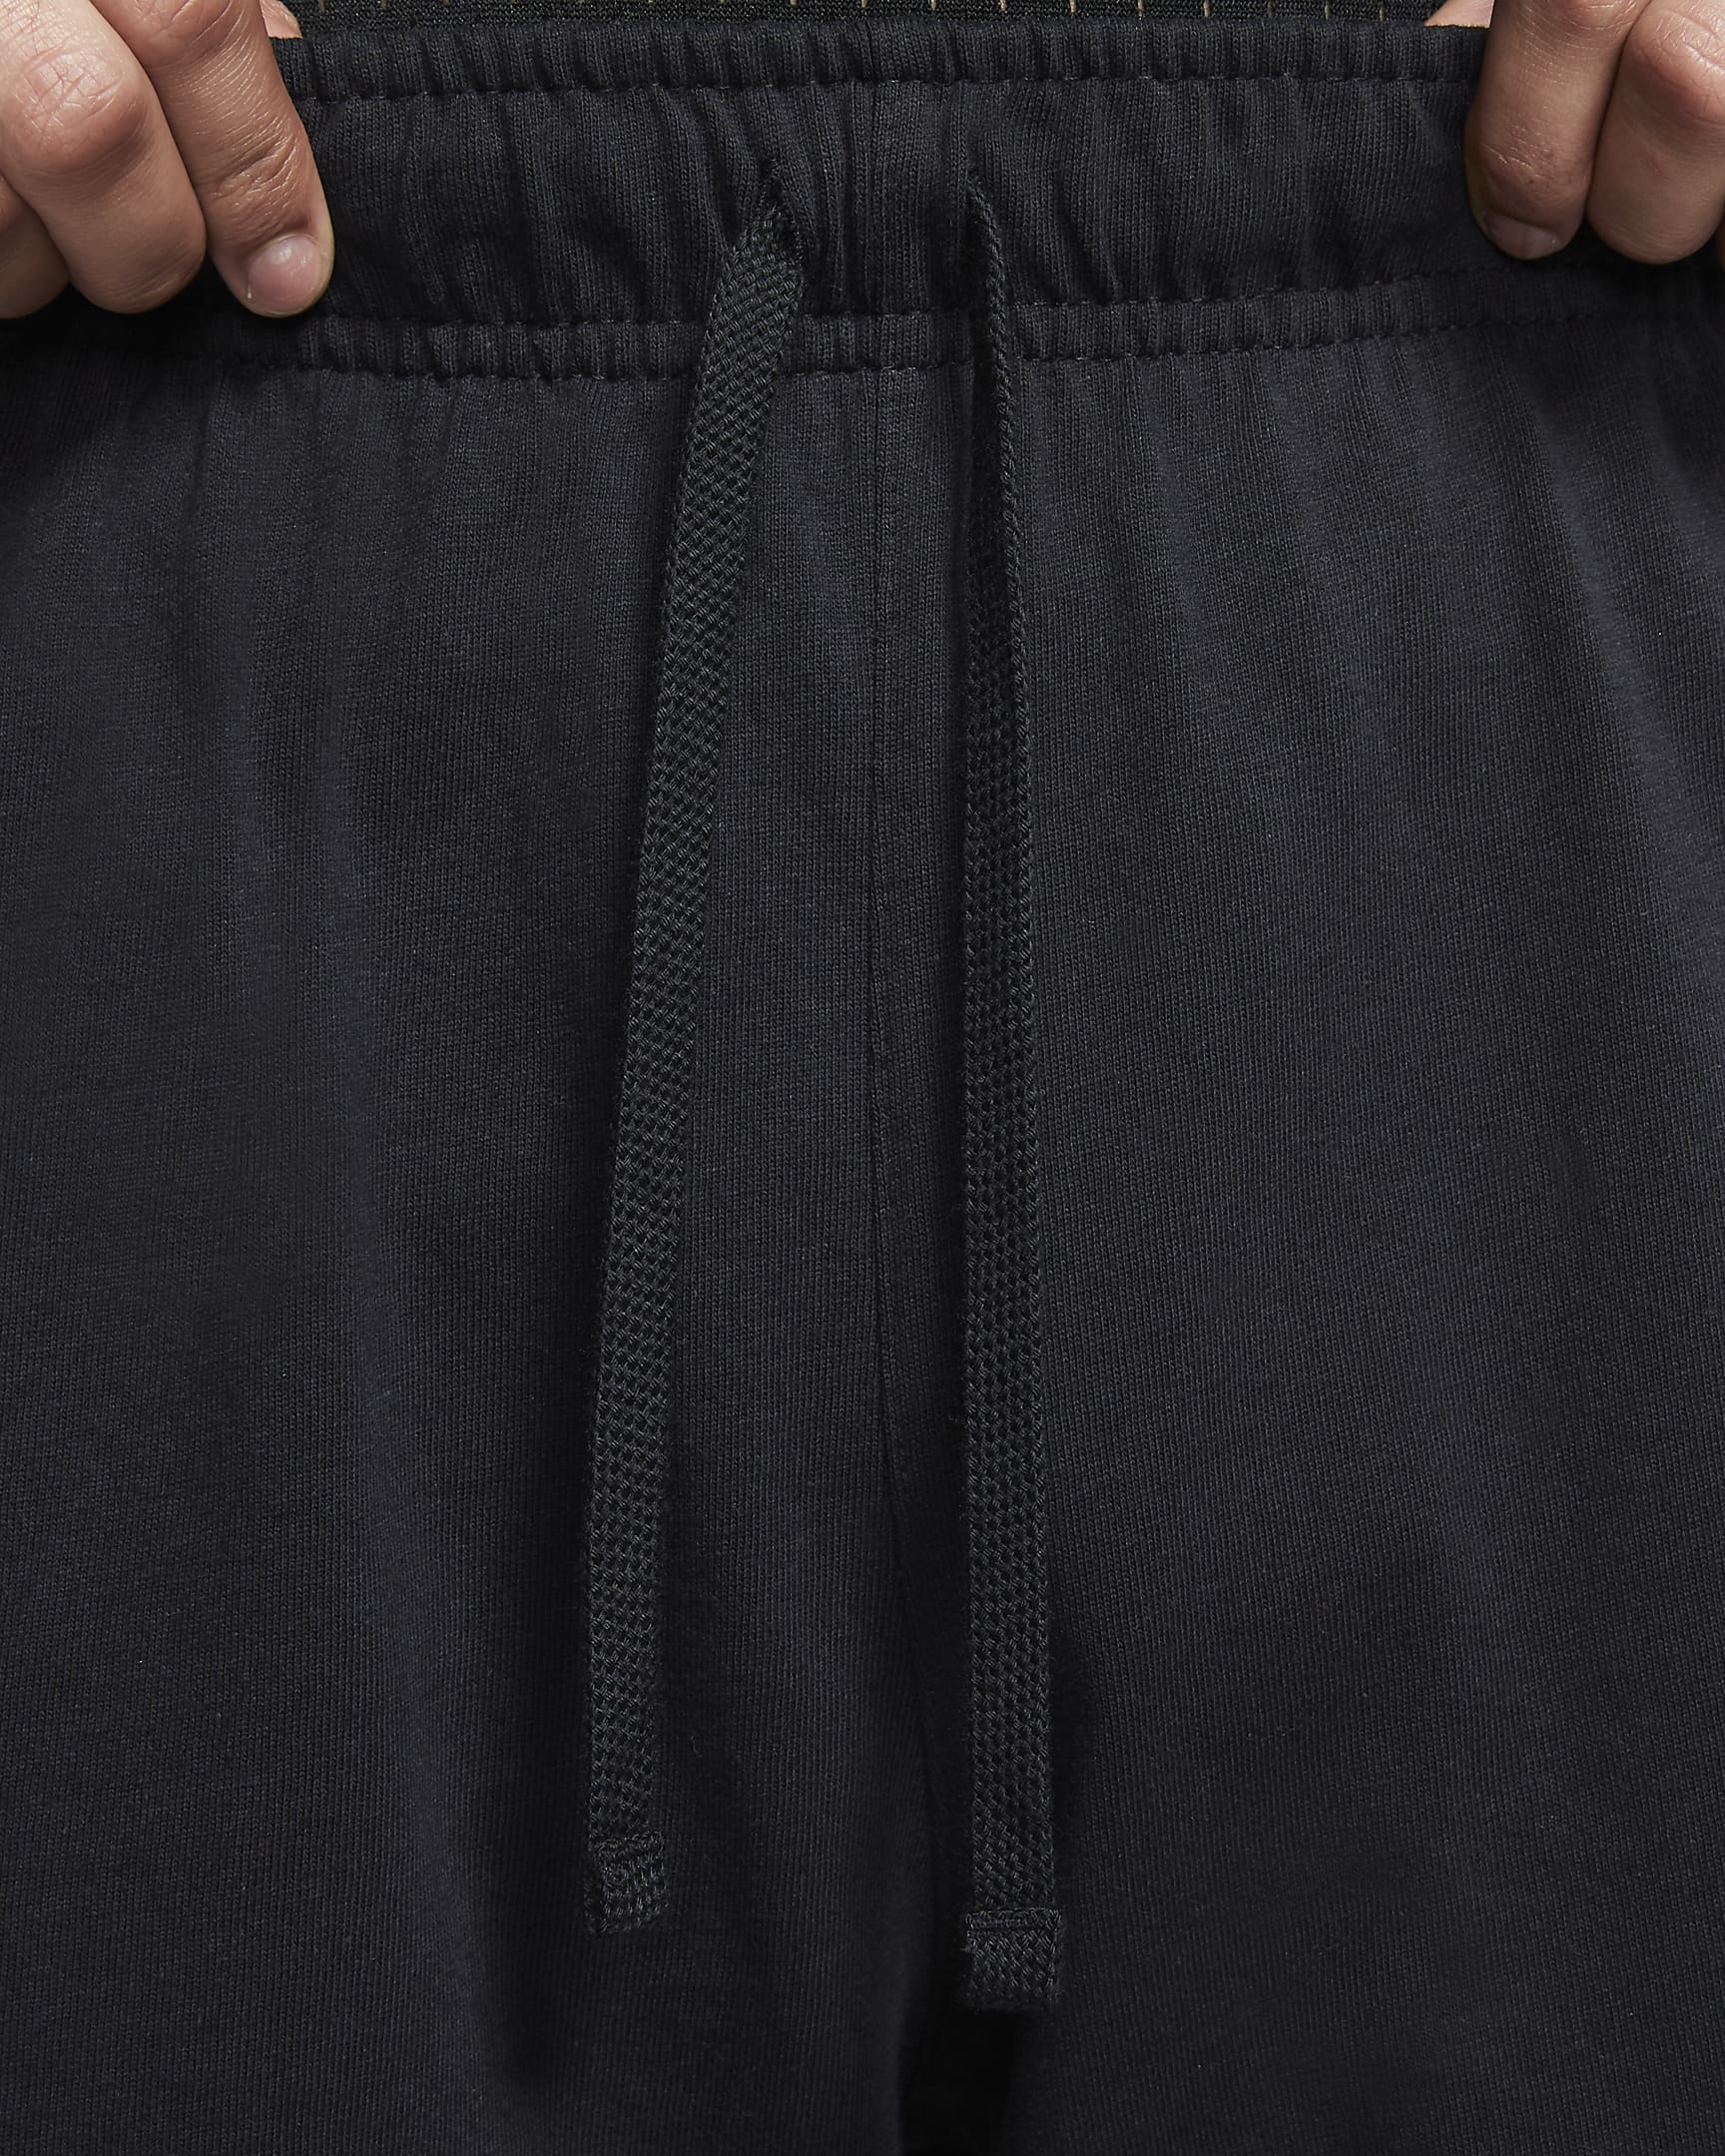 Nike Sportswear Club-shorts til mænd - sort/hvid